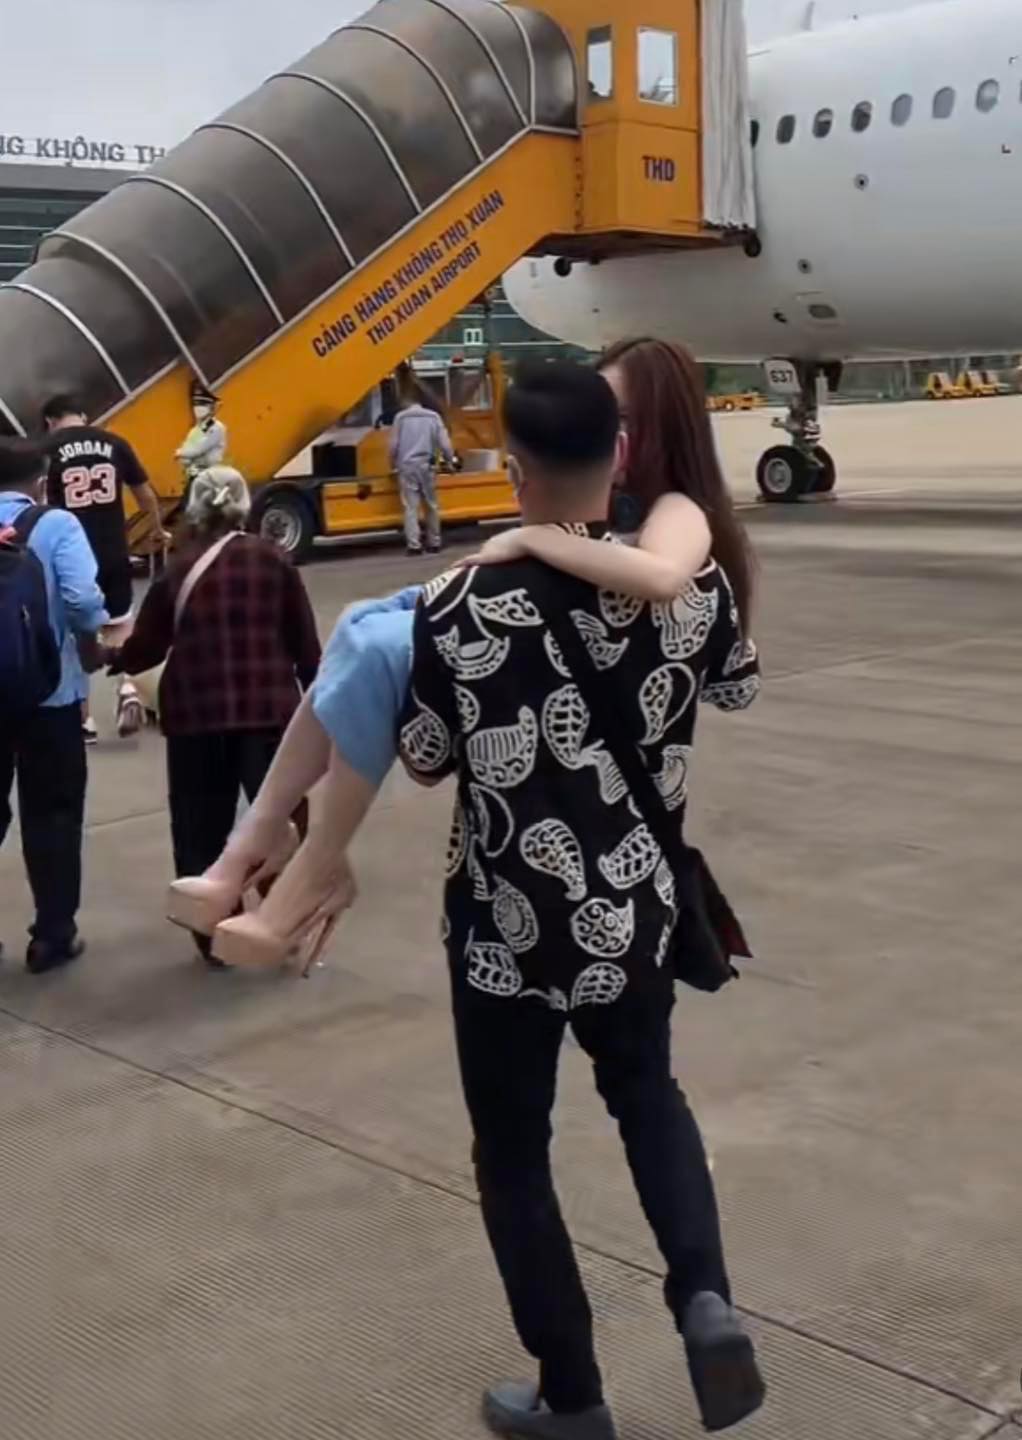 Hình ảnh anh chàng bế vợ lên máy bay gây tranh cãi.